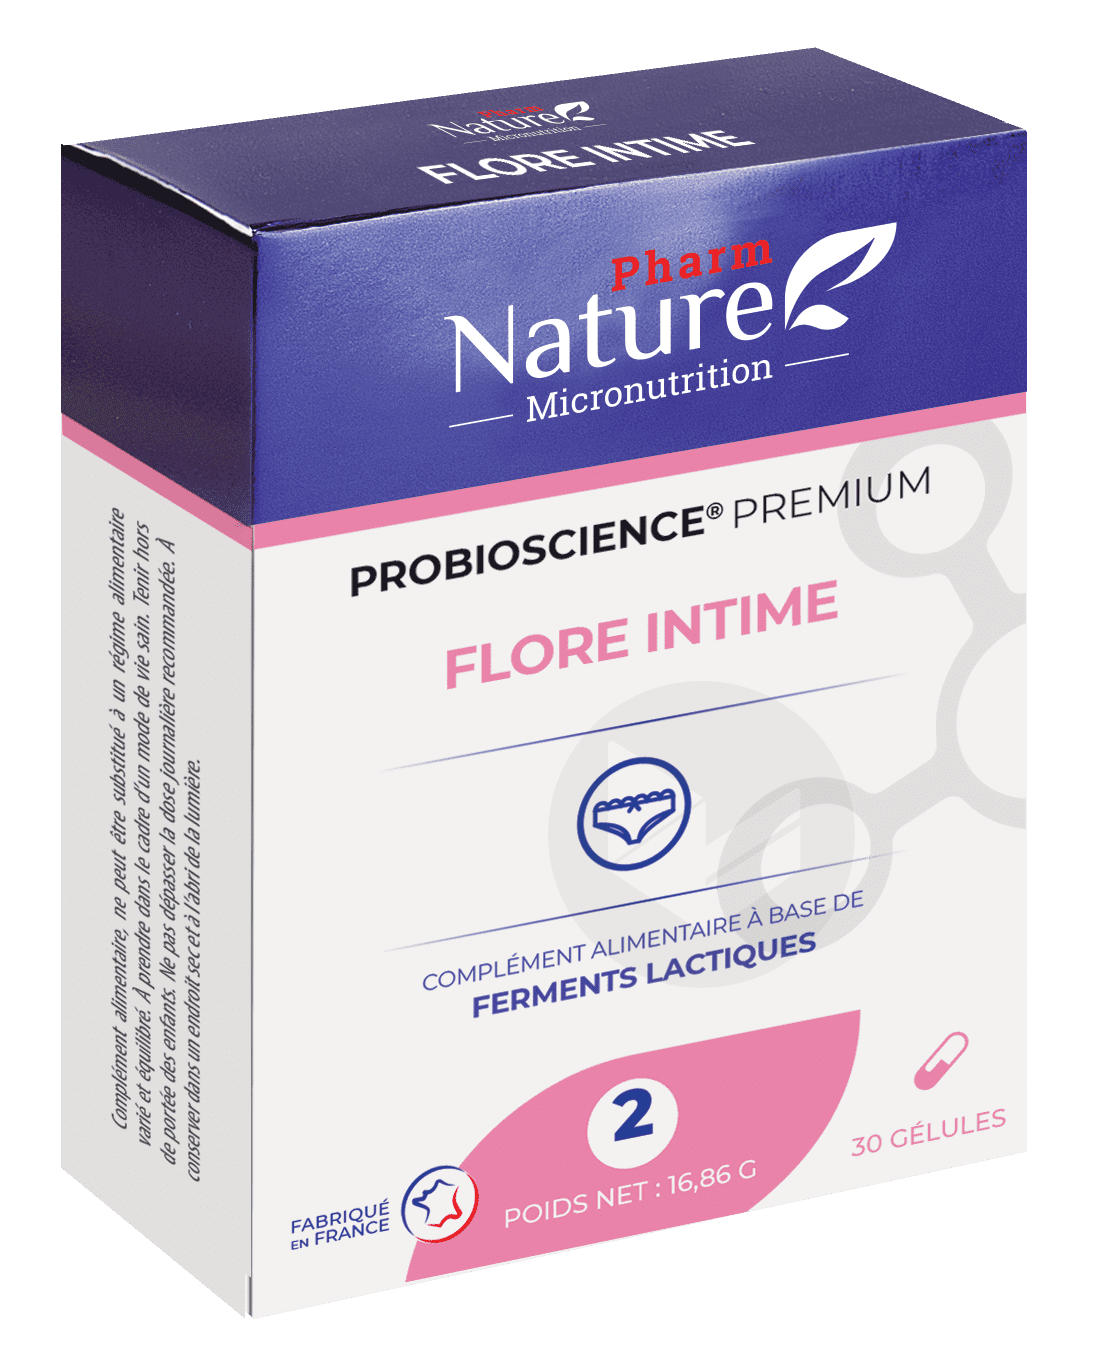 Probioscience® 2 – Flore intime 30 gélules